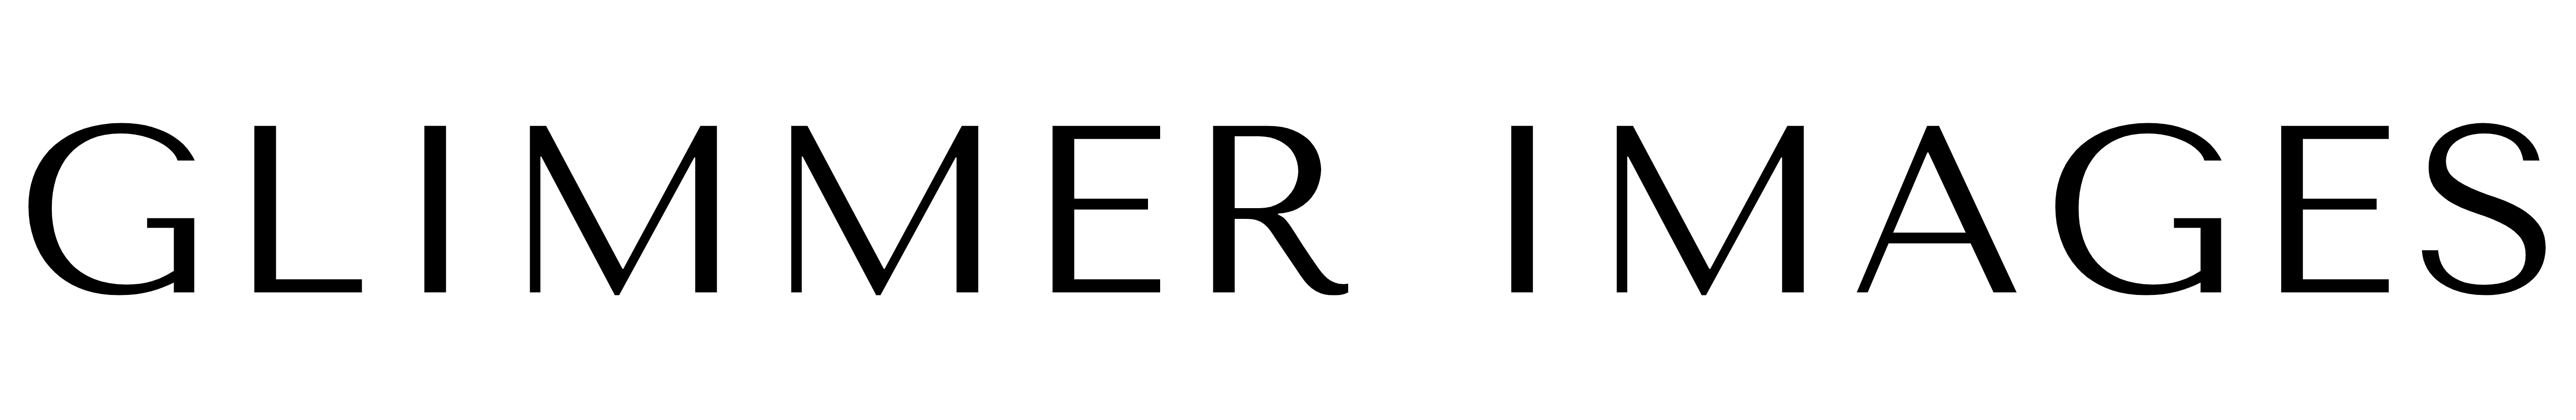 Glimmer Images Logo